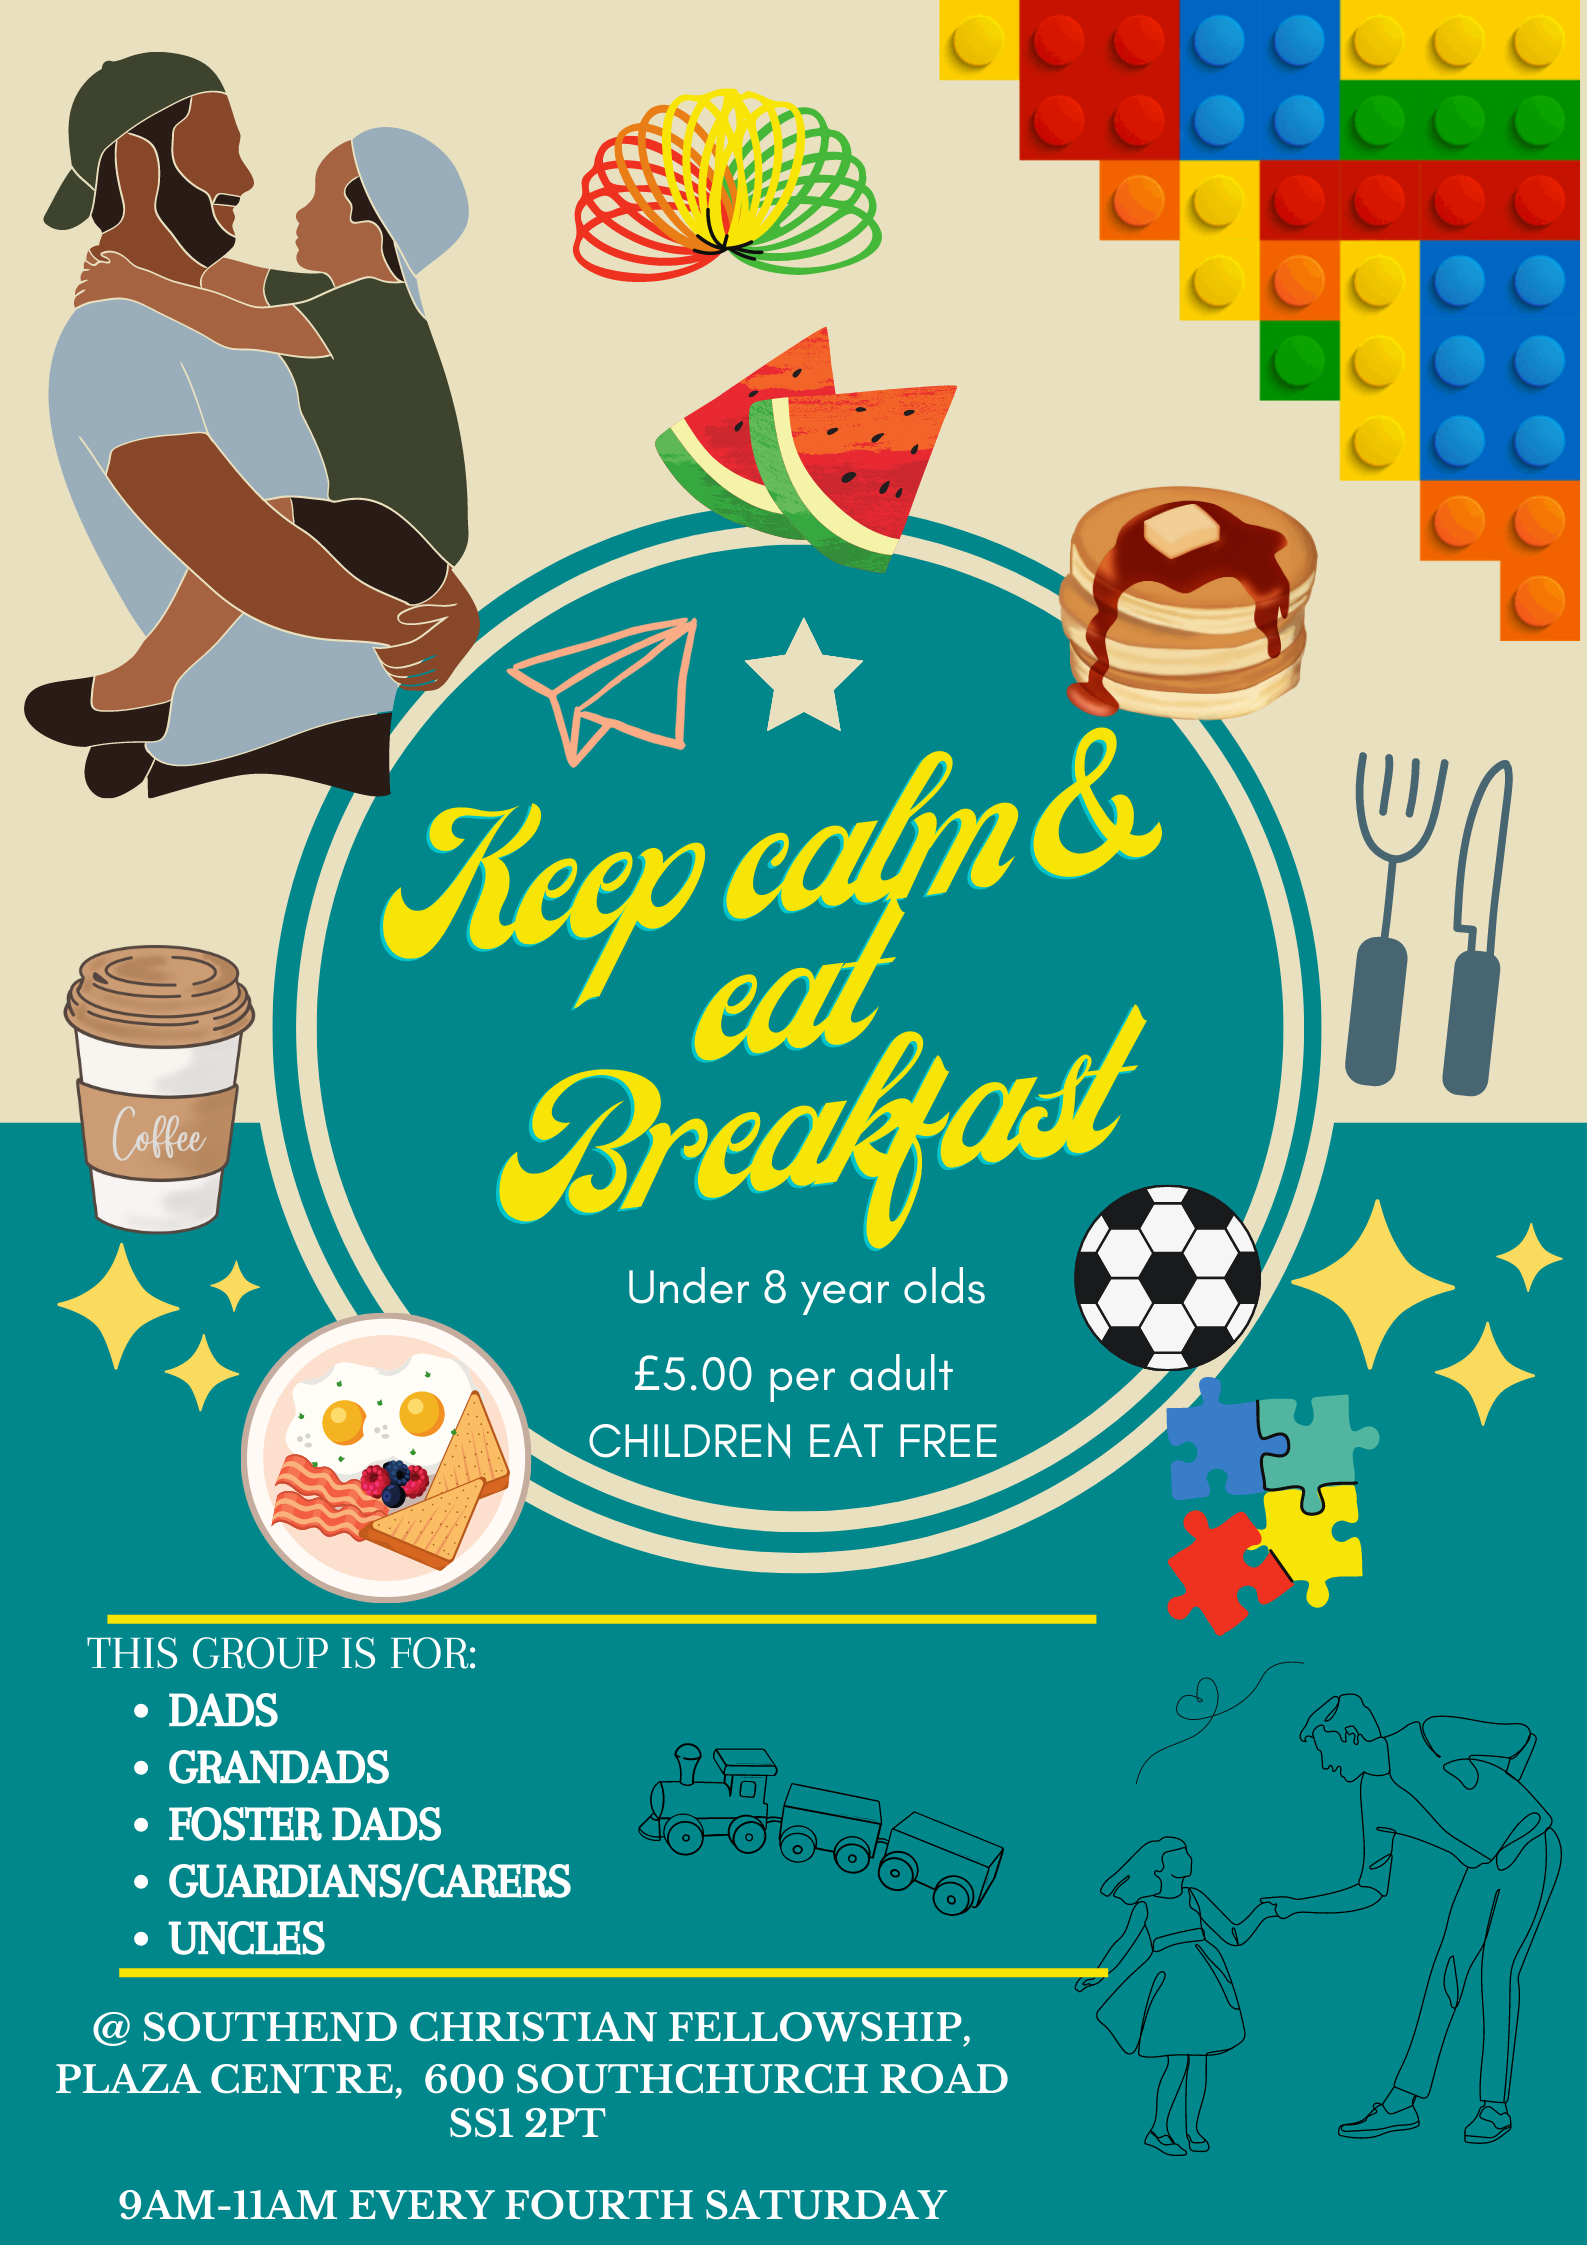 Keep calm & eat Breakfast (male carers breakfast)